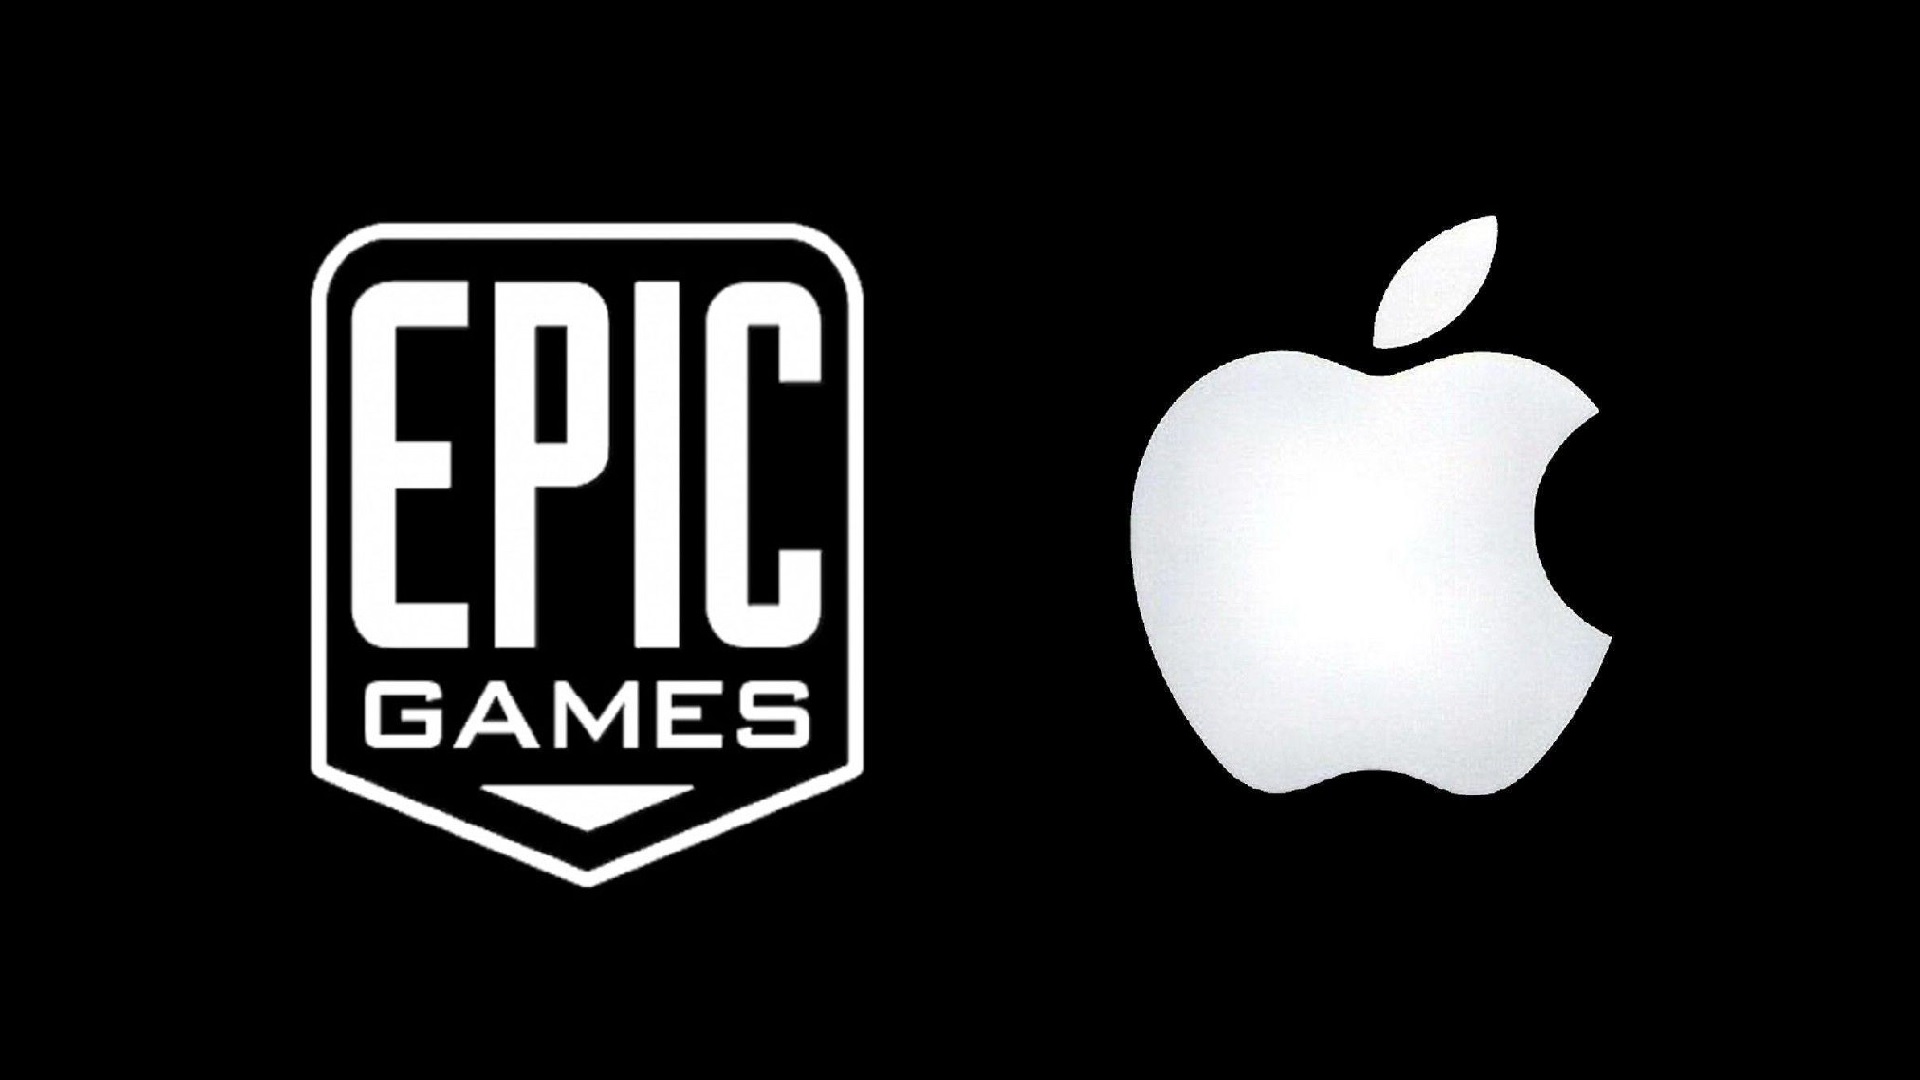 Dab tsi tshwm sim nrog Epic Games thiab Apple?